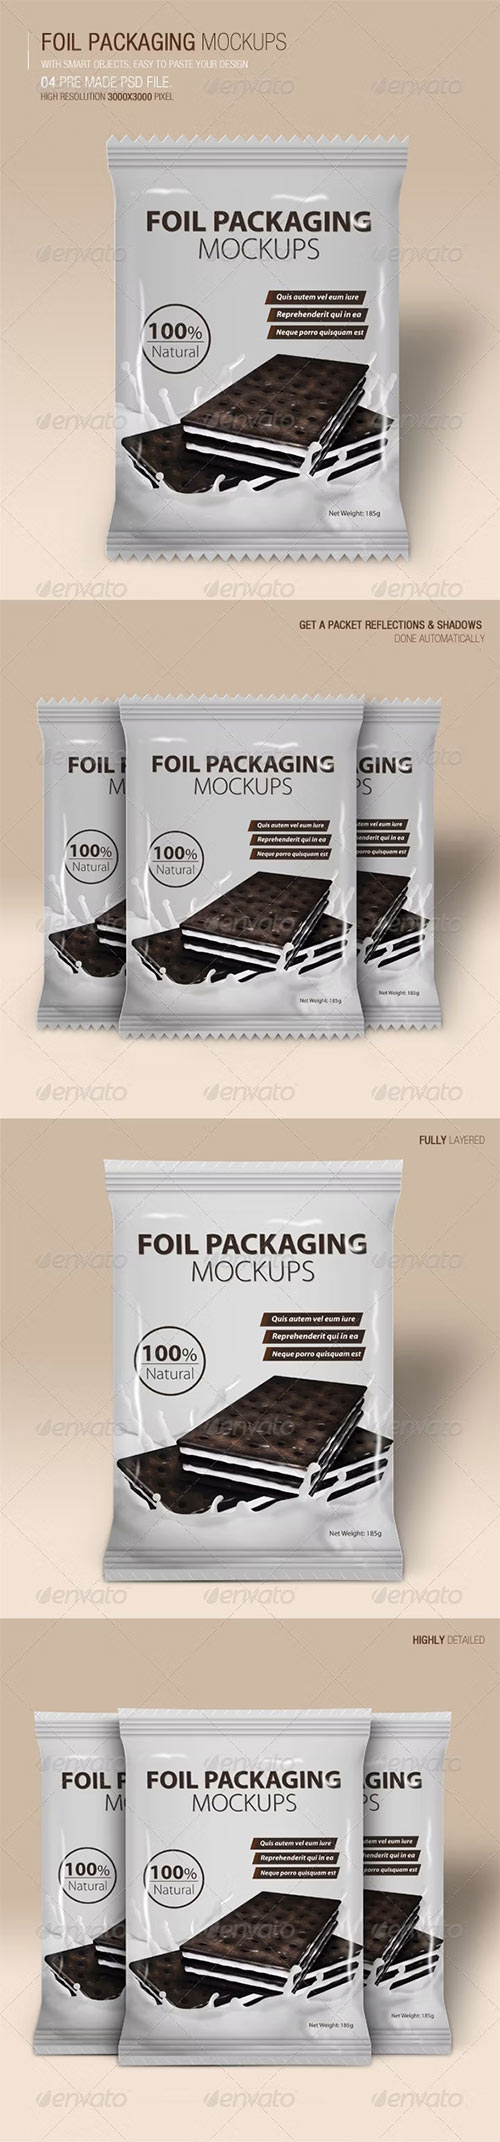 Foil Packaging Mockups Vol.2 6593106